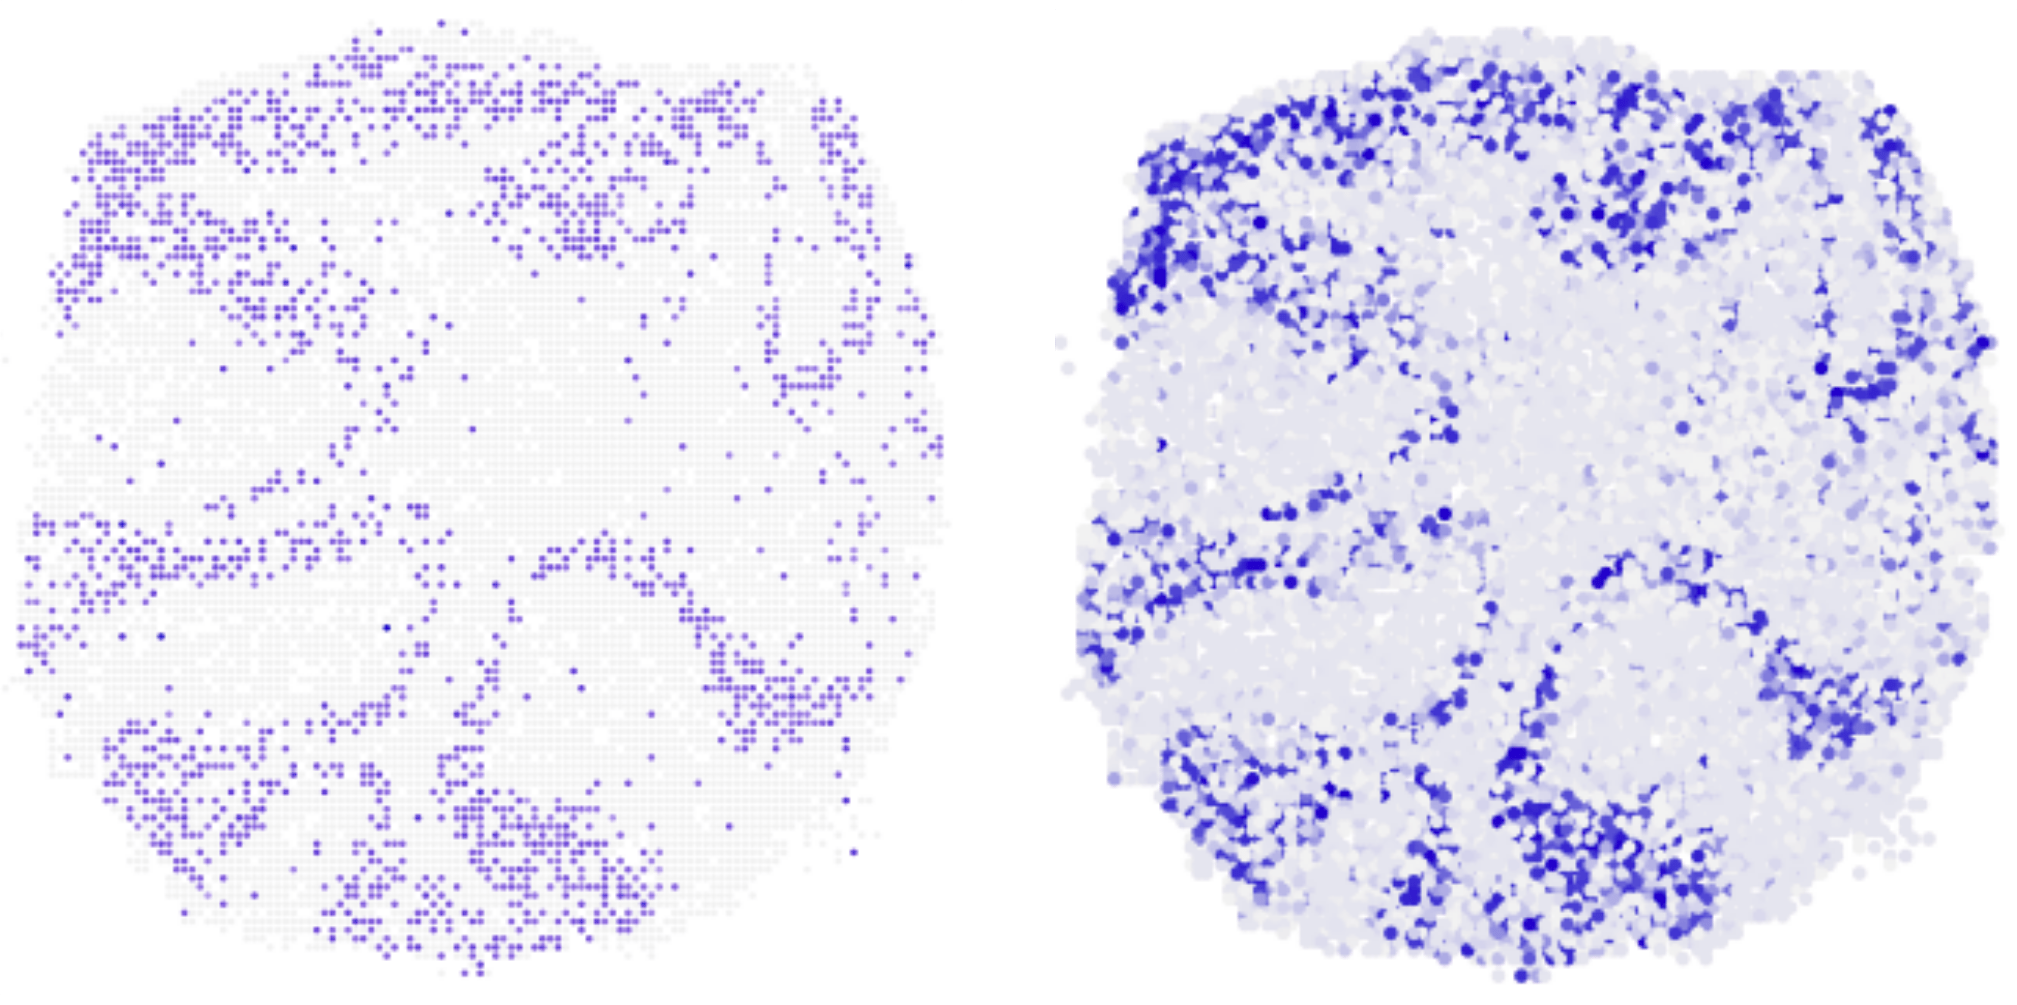 Zwei kreisförmige Scheiben mit zahlreichen violetten Punkten. Jeder Punkt gibt die Lage einer Zelle in der Scheibe an. Beide Bilder sind nahezu identisch.